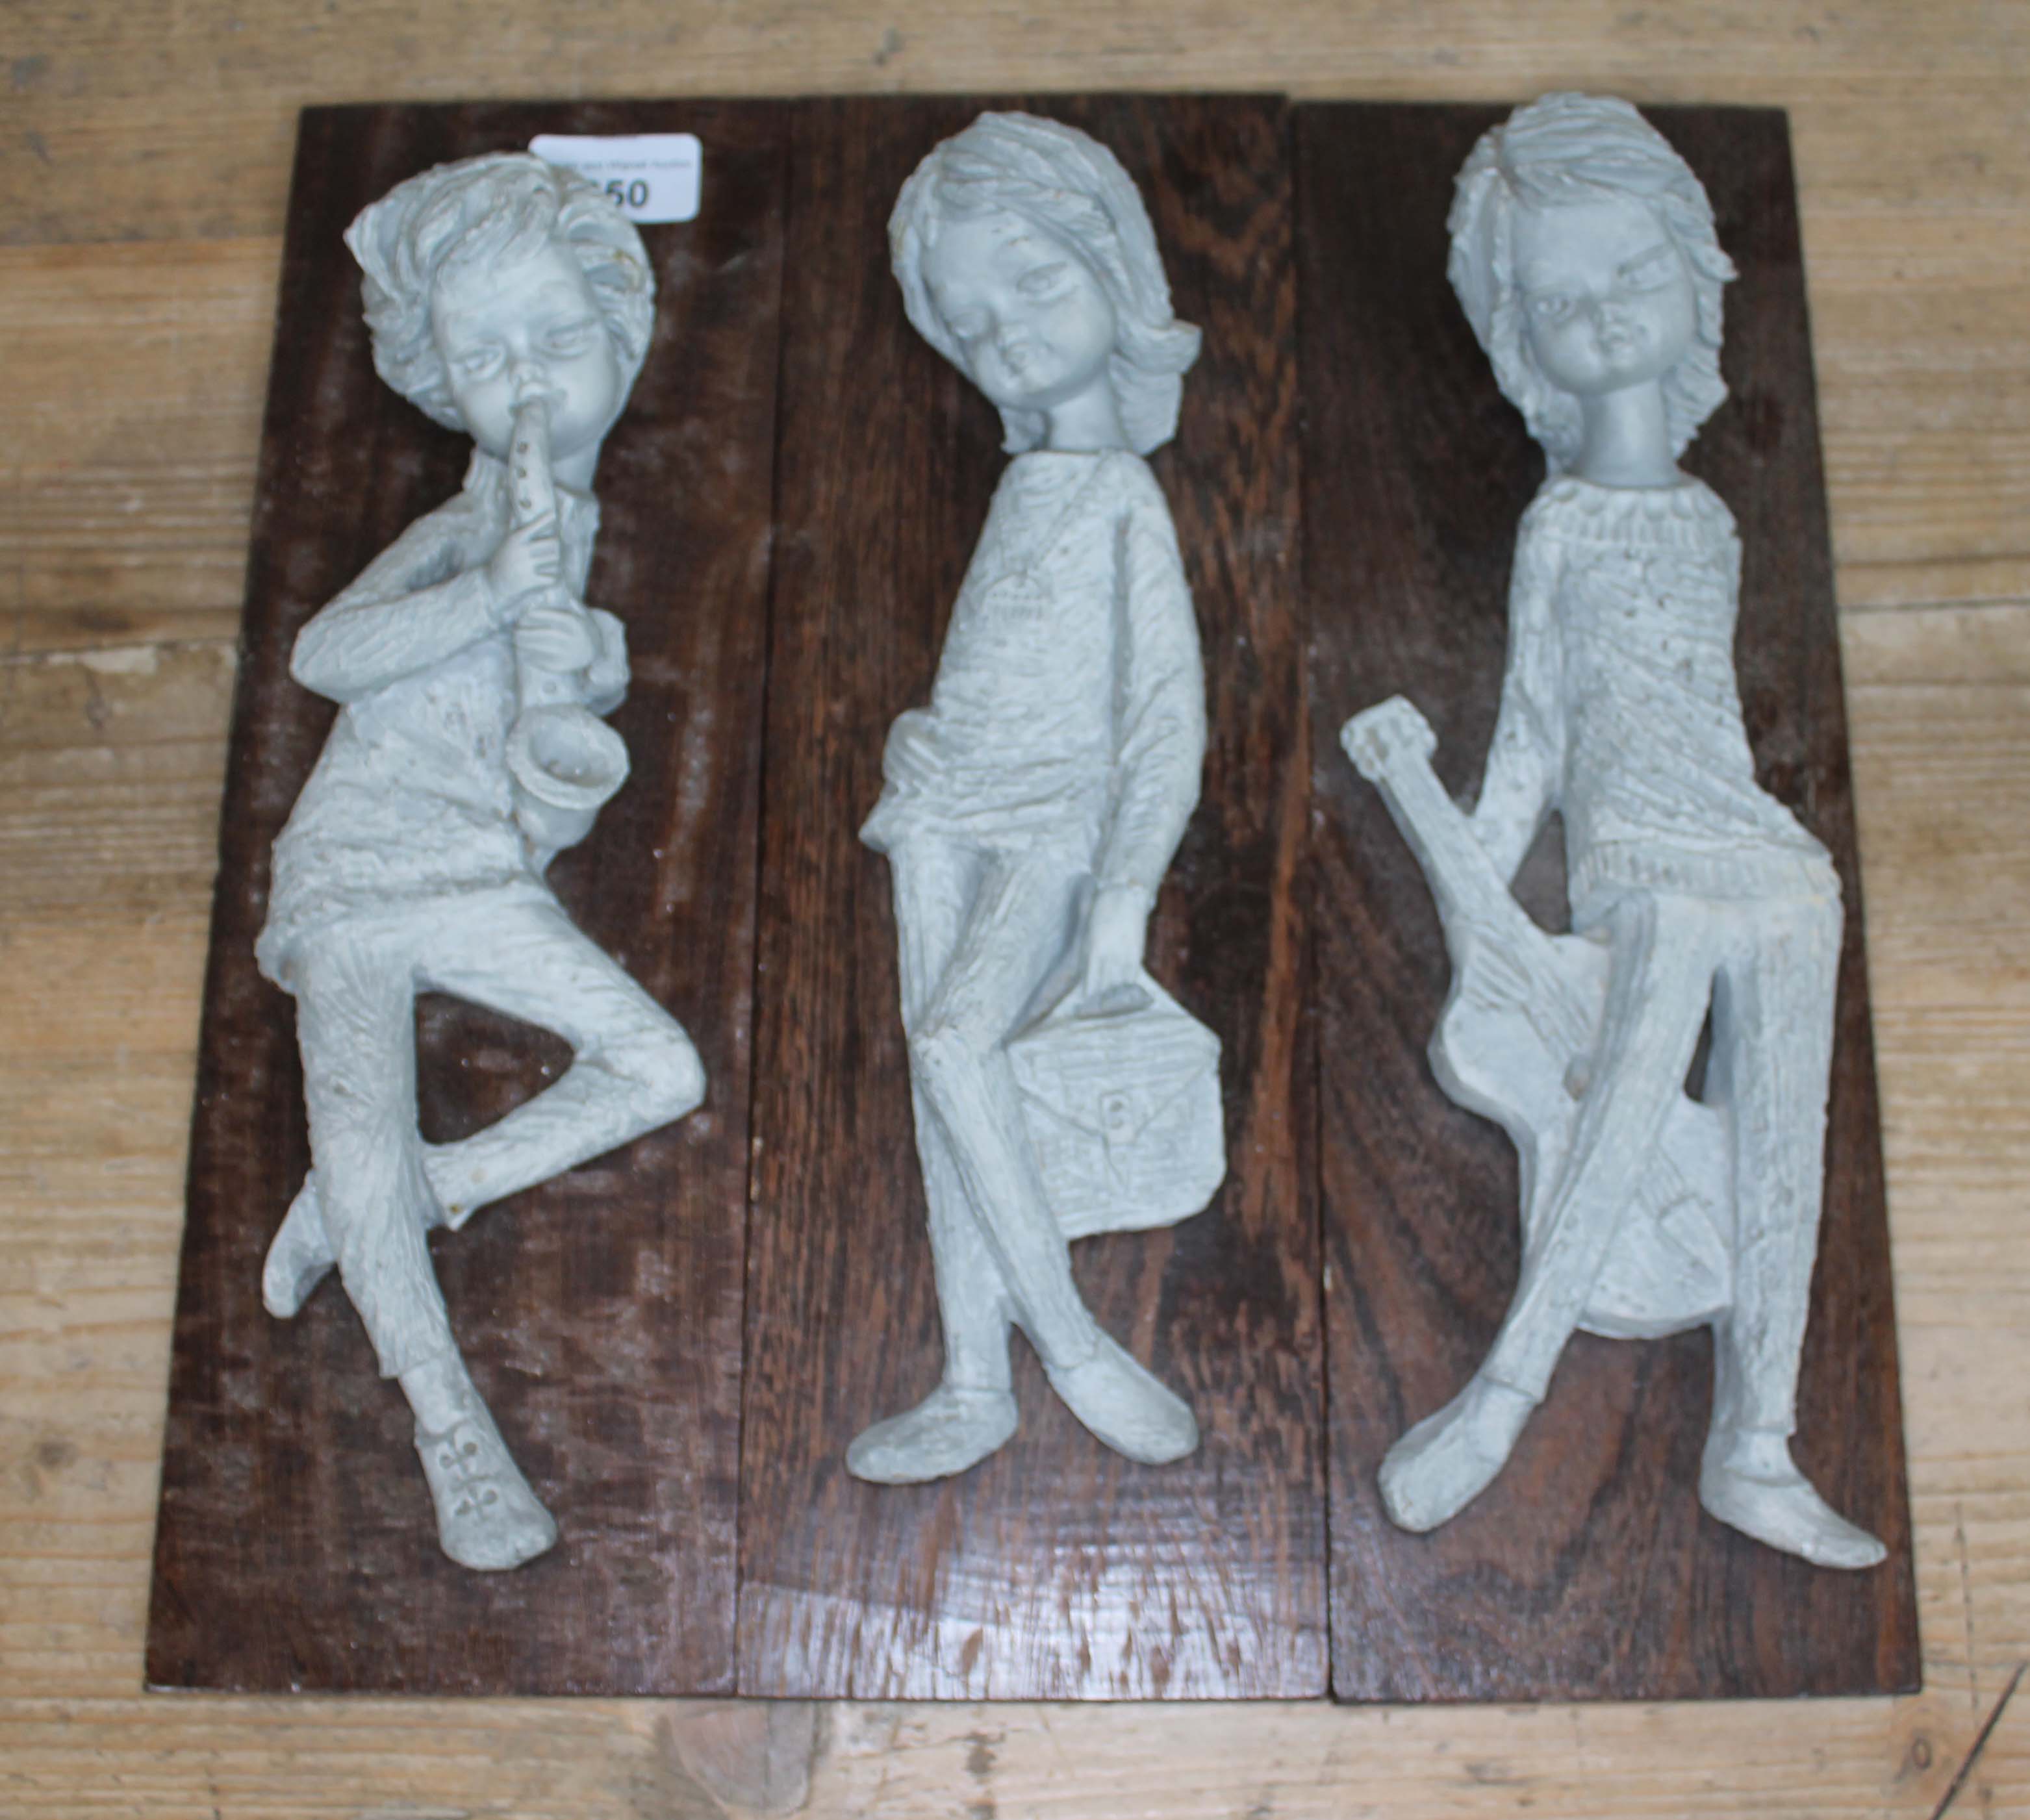 3 composition figures on wooden plinths, labelled 'Kunsthandel Brock Holland'.